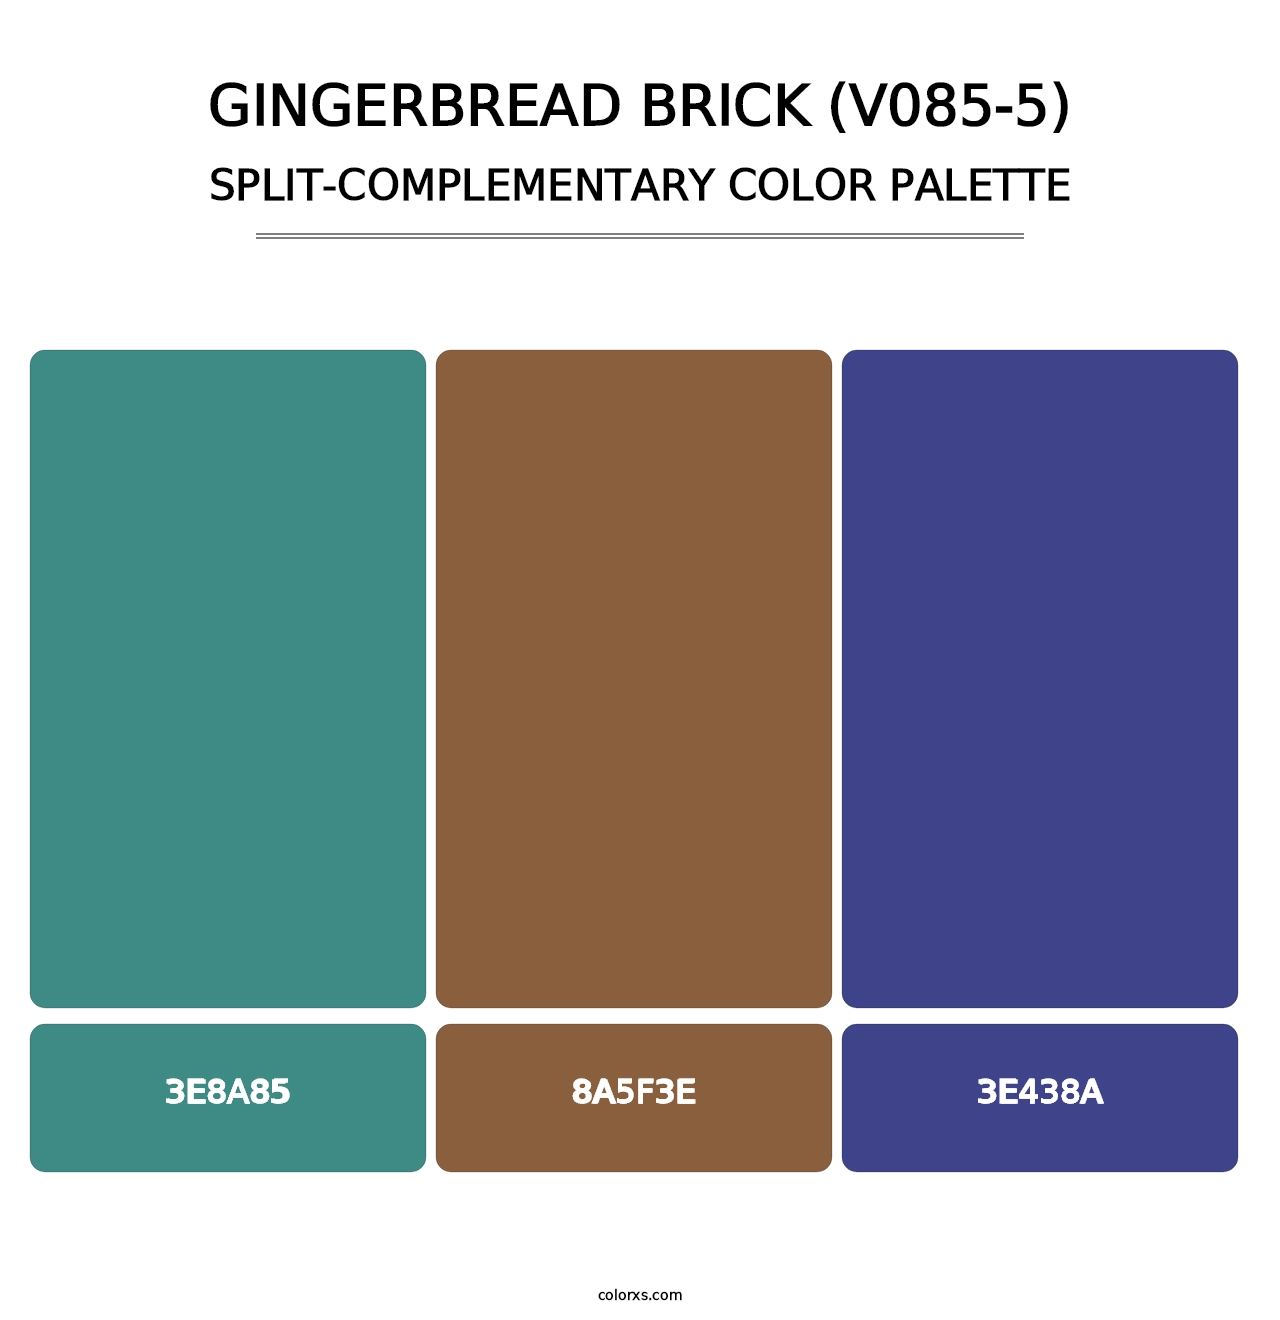 Gingerbread Brick (V085-5) - Split-Complementary Color Palette